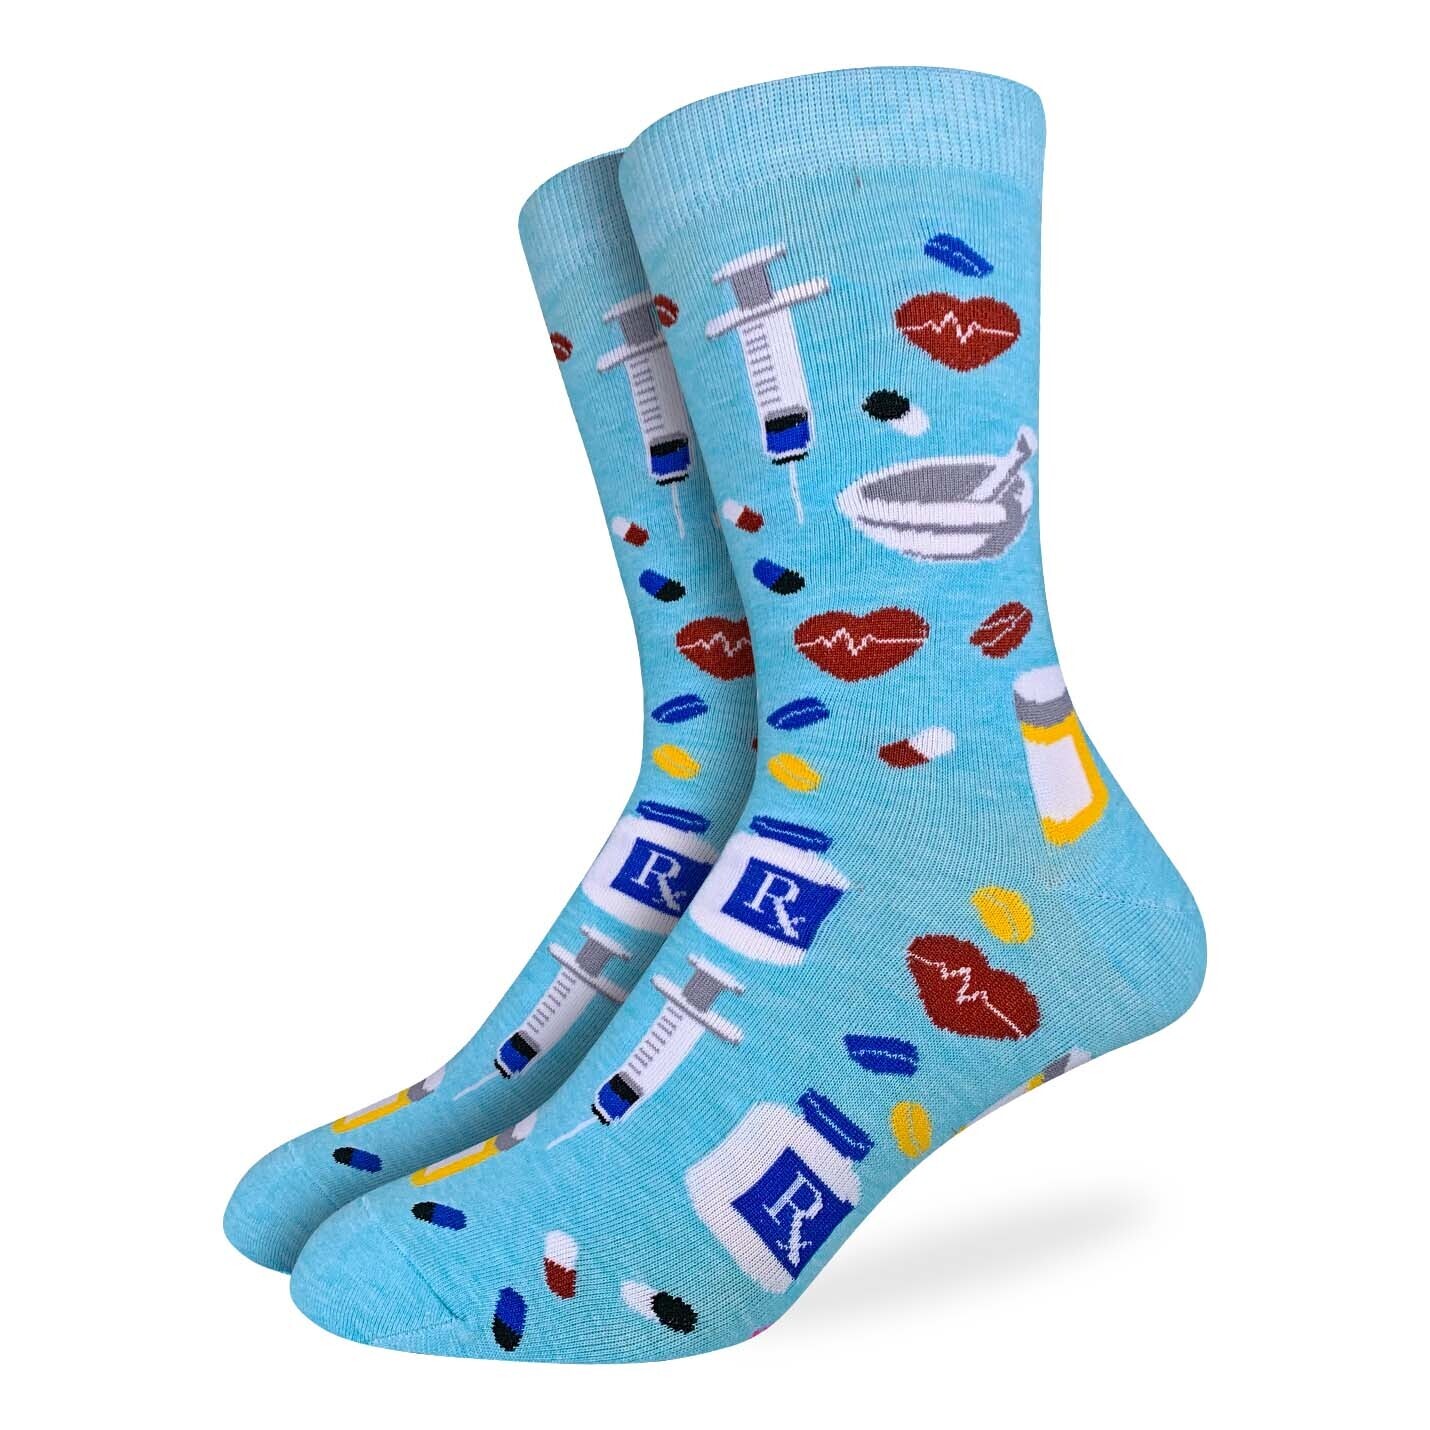 Pharmacist socks | M/L adult sizes | Good Luck Sock